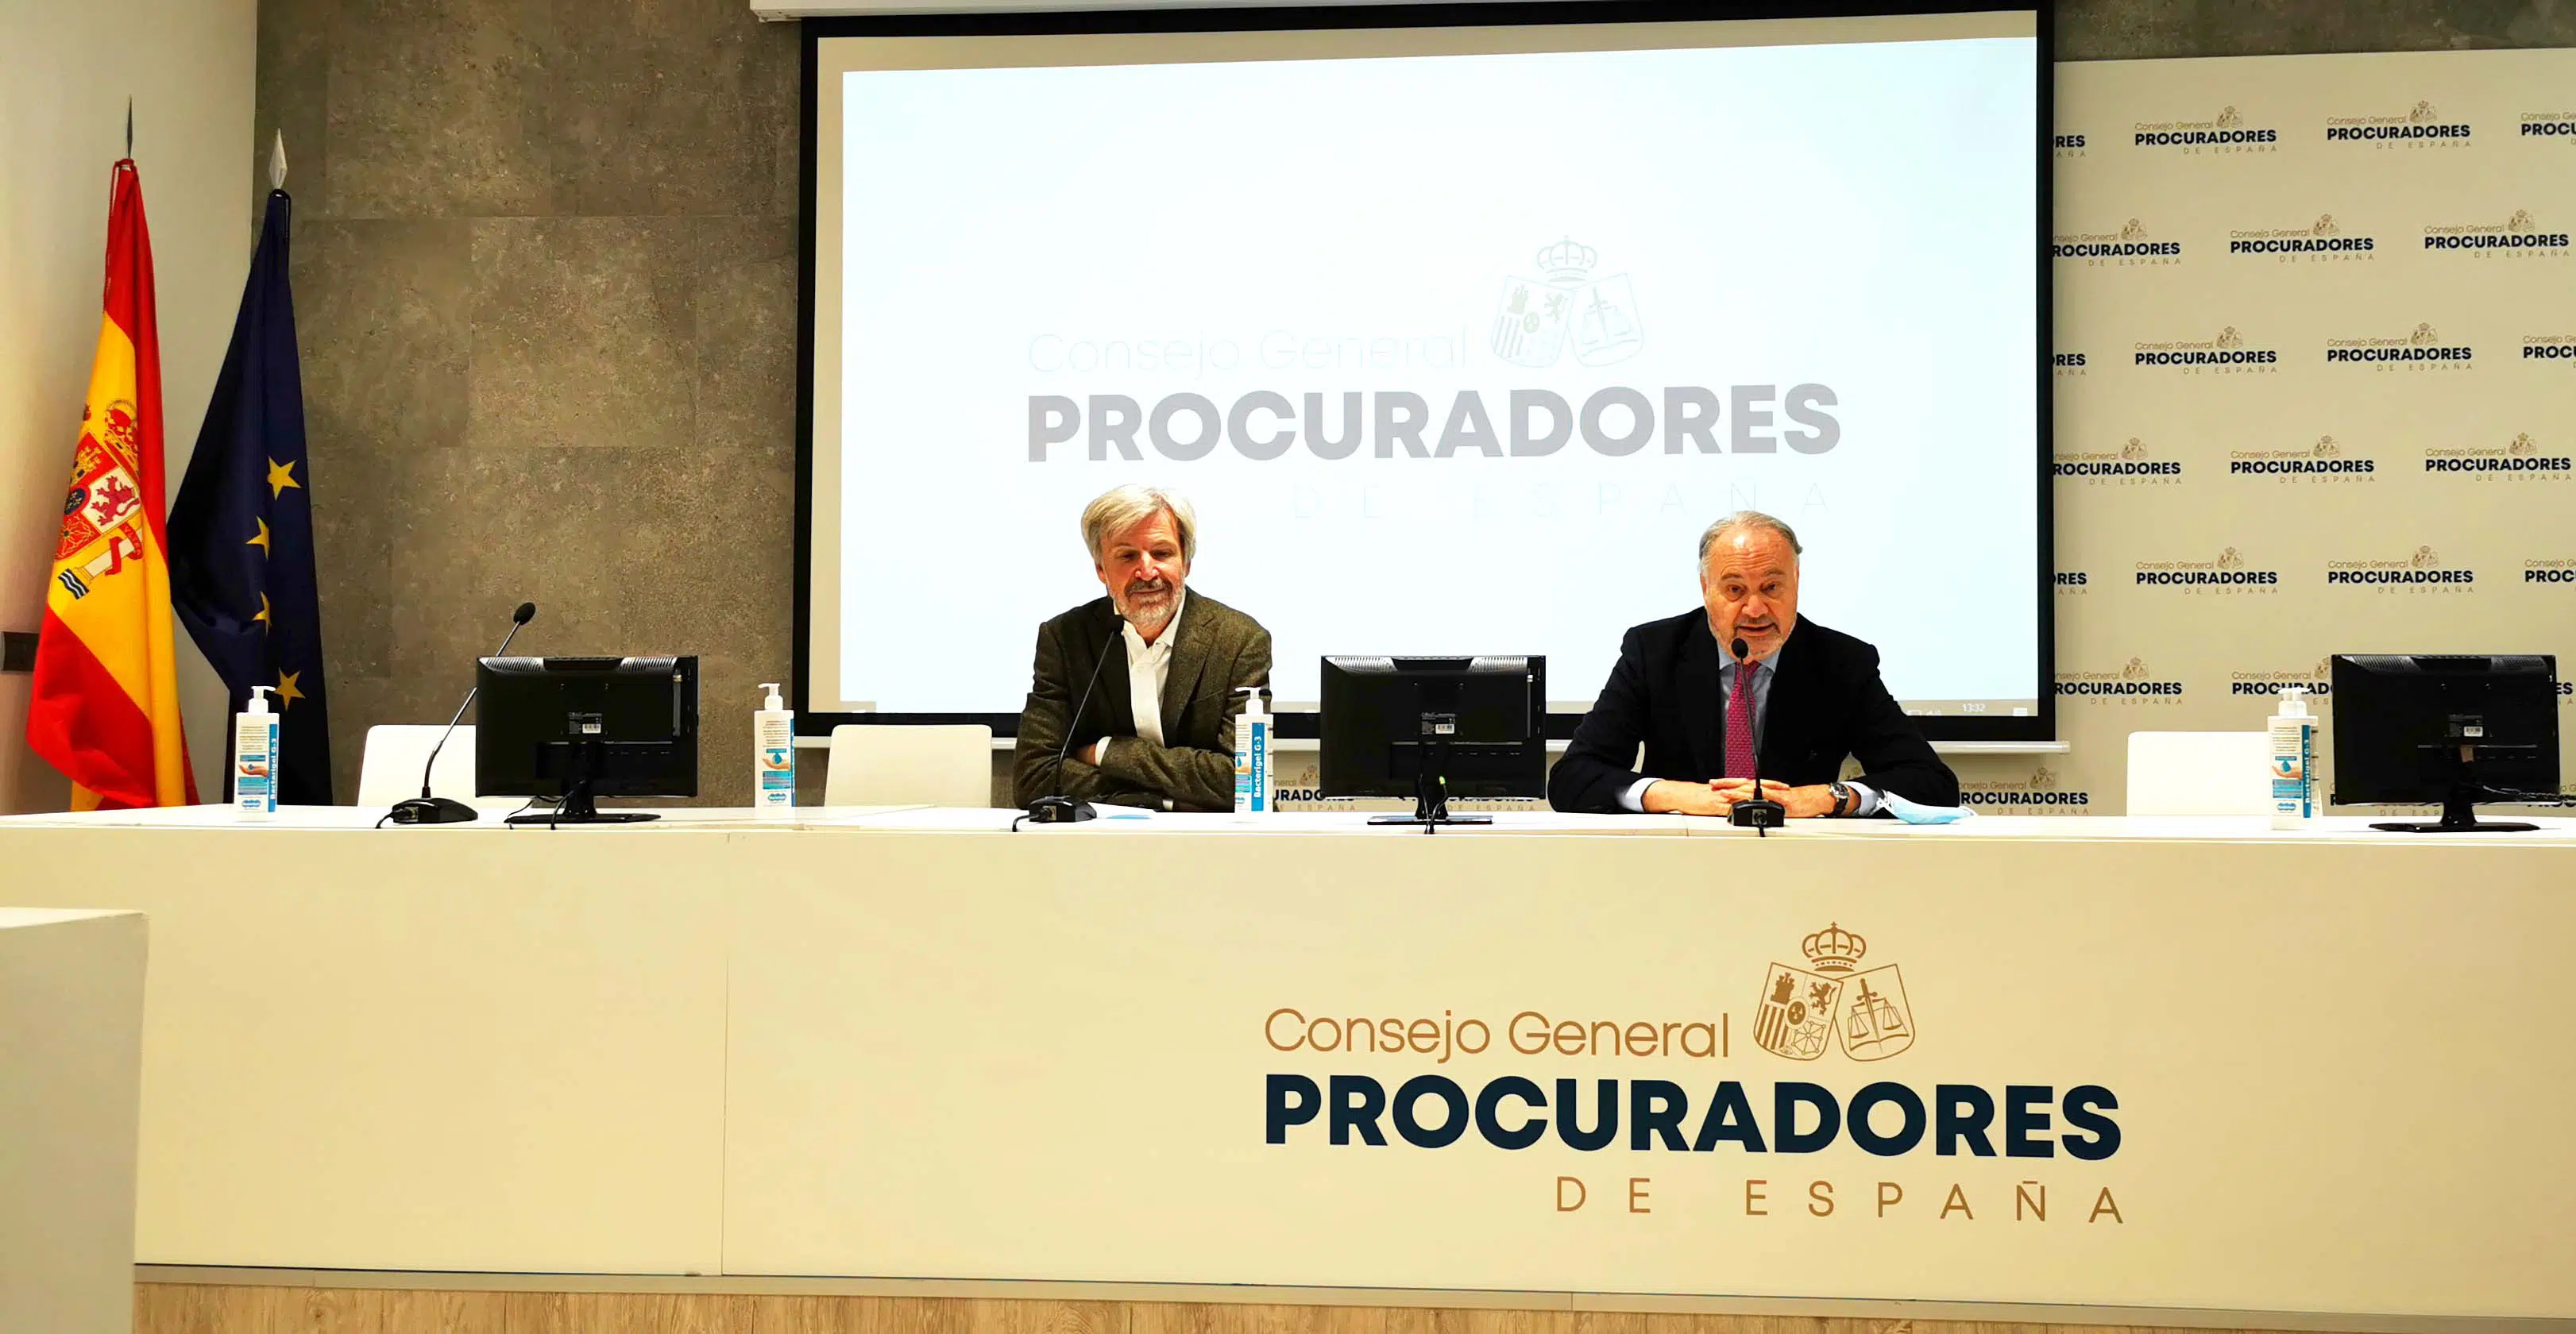 El Consejo General de Procuradores de España moderniza su imagen corporativa